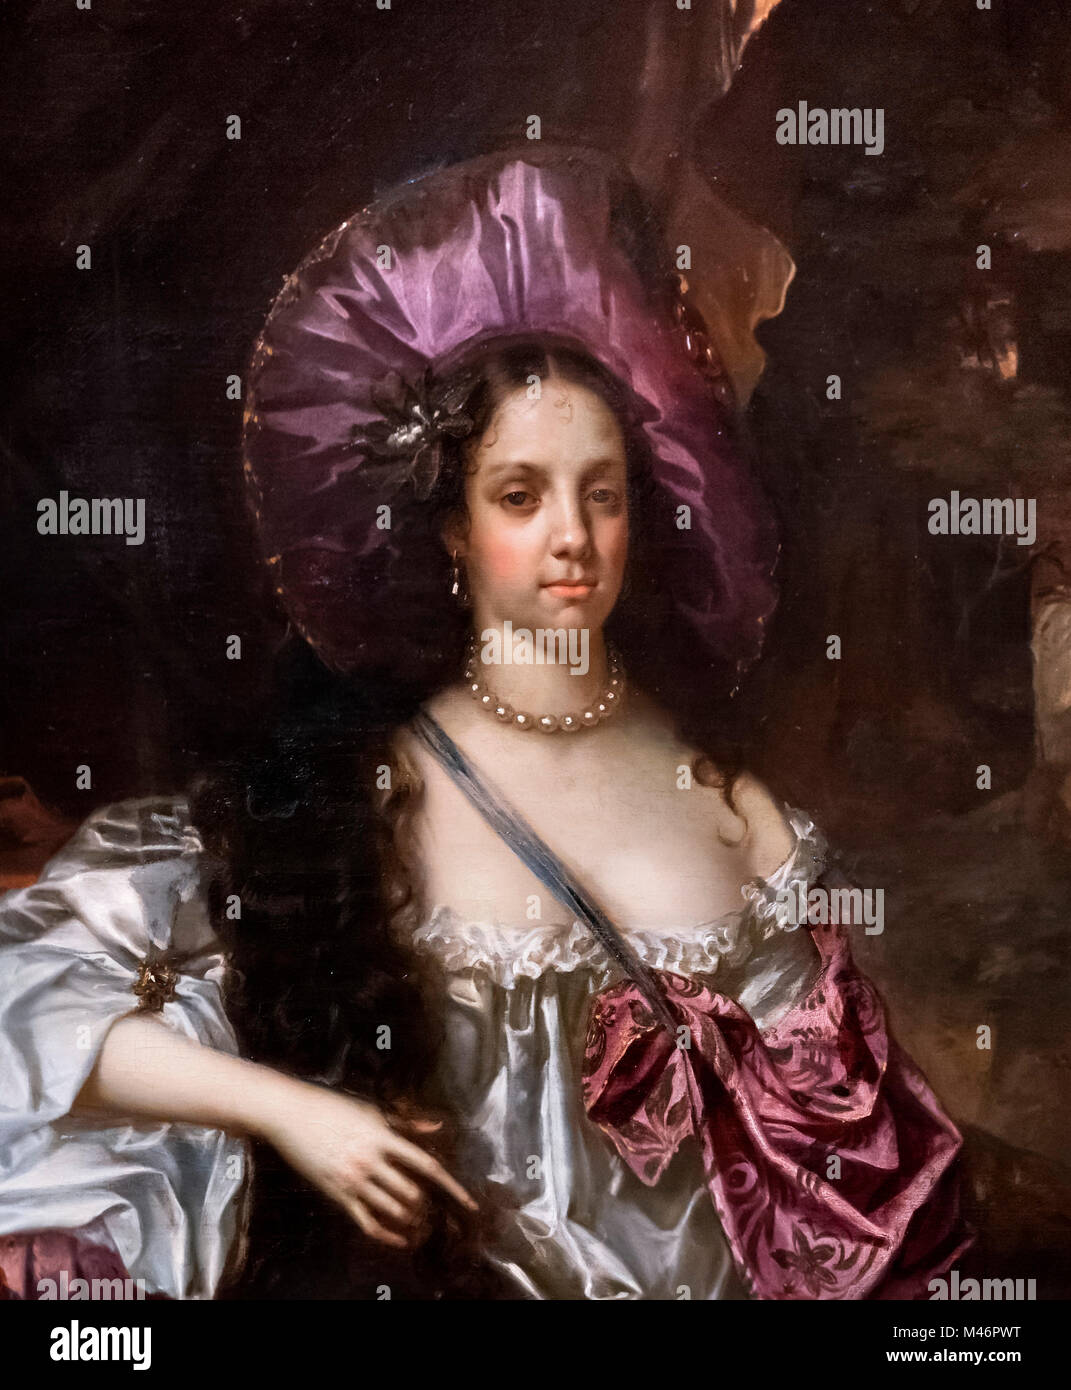 Caterina di Braganza (1638-1705), regina consorte come moglie del re Carlo II. Ritratto di Hacob Huysmans, olio su tela, 1662-4. Dettaglio di un dipinto di grandi dimensioni, M46PWW. Foto Stock